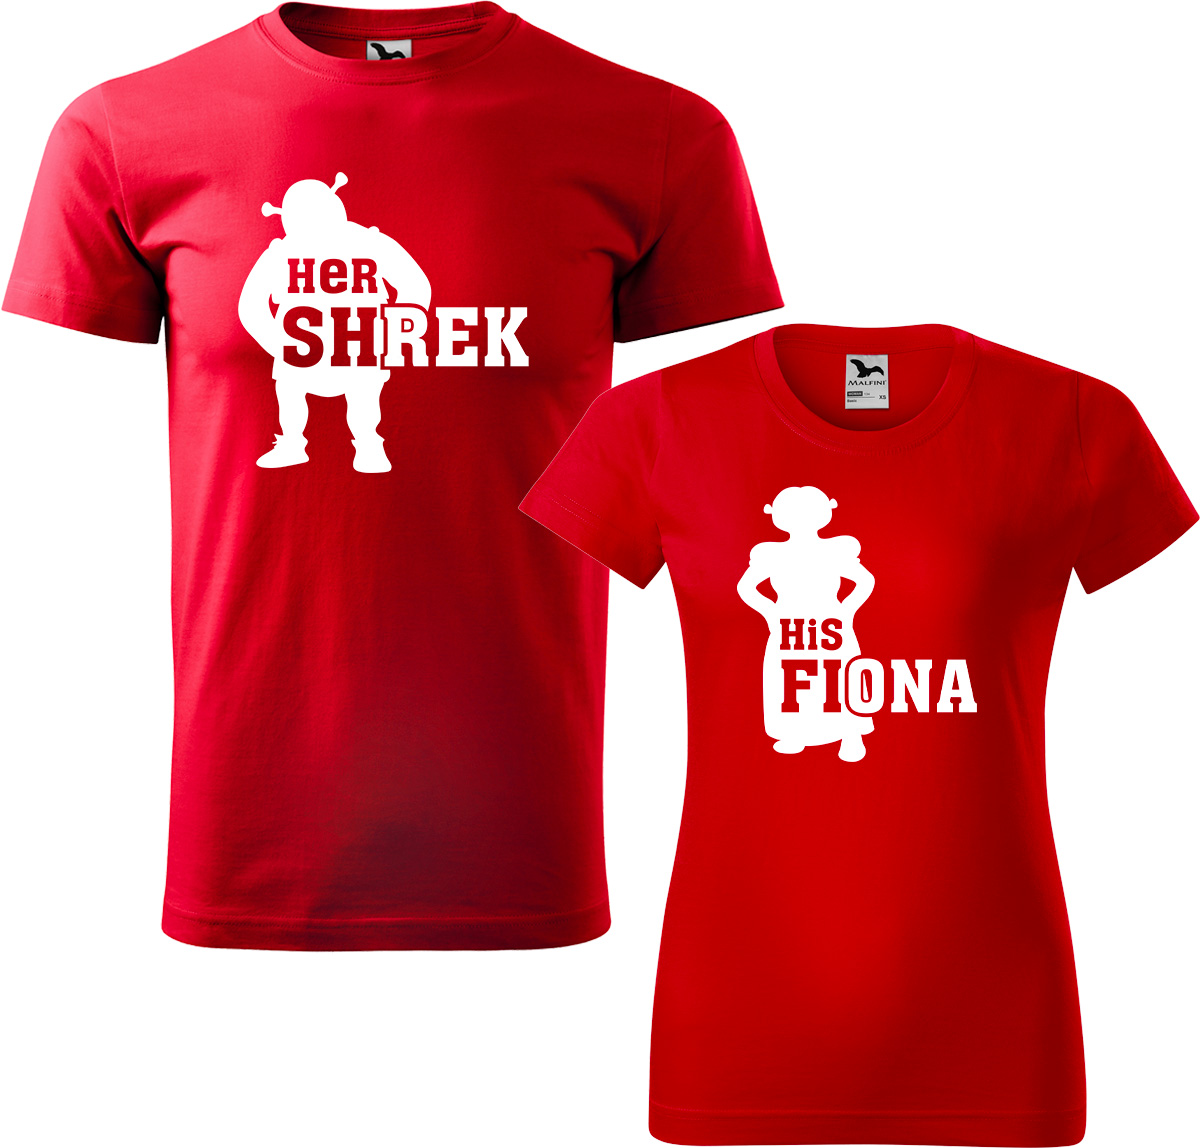 Trička pro páry - Shrek a Fiona Barva: Červená (07), Velikost dámské tričko: S, Velikost pánské tričko: M